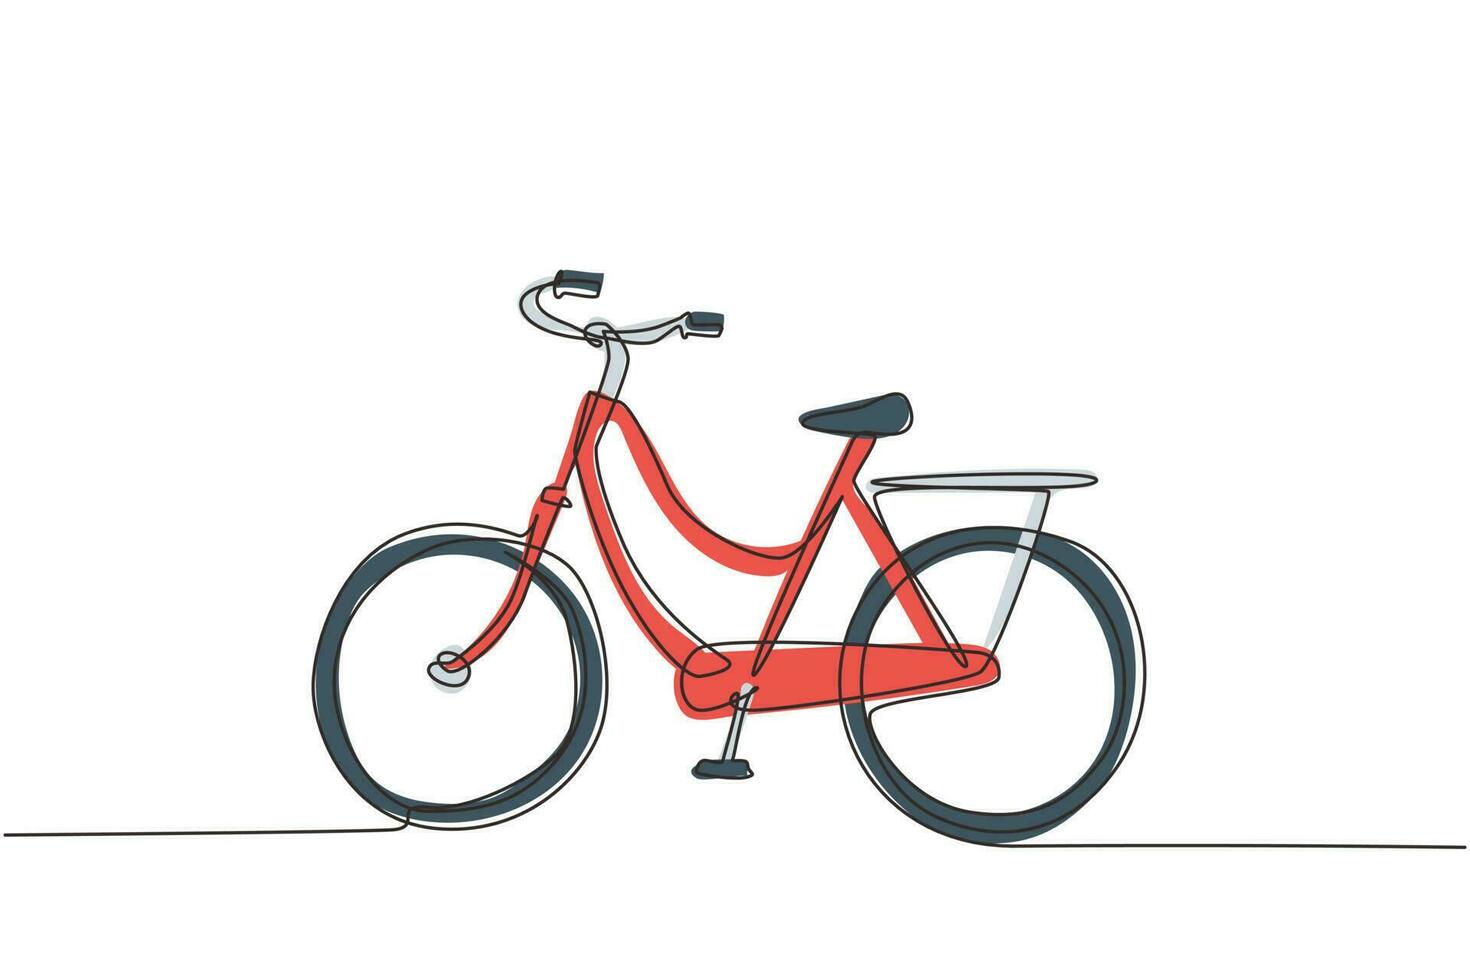 una sola línea de dibujo vista lateral bicicleta de ciudad urbana retro vintage, transporte deportivo ecológico. bicicleta relajante para la comunidad. estilo de vida saludable en bicicleta. vector gráfico de diseño de dibujo de línea continua